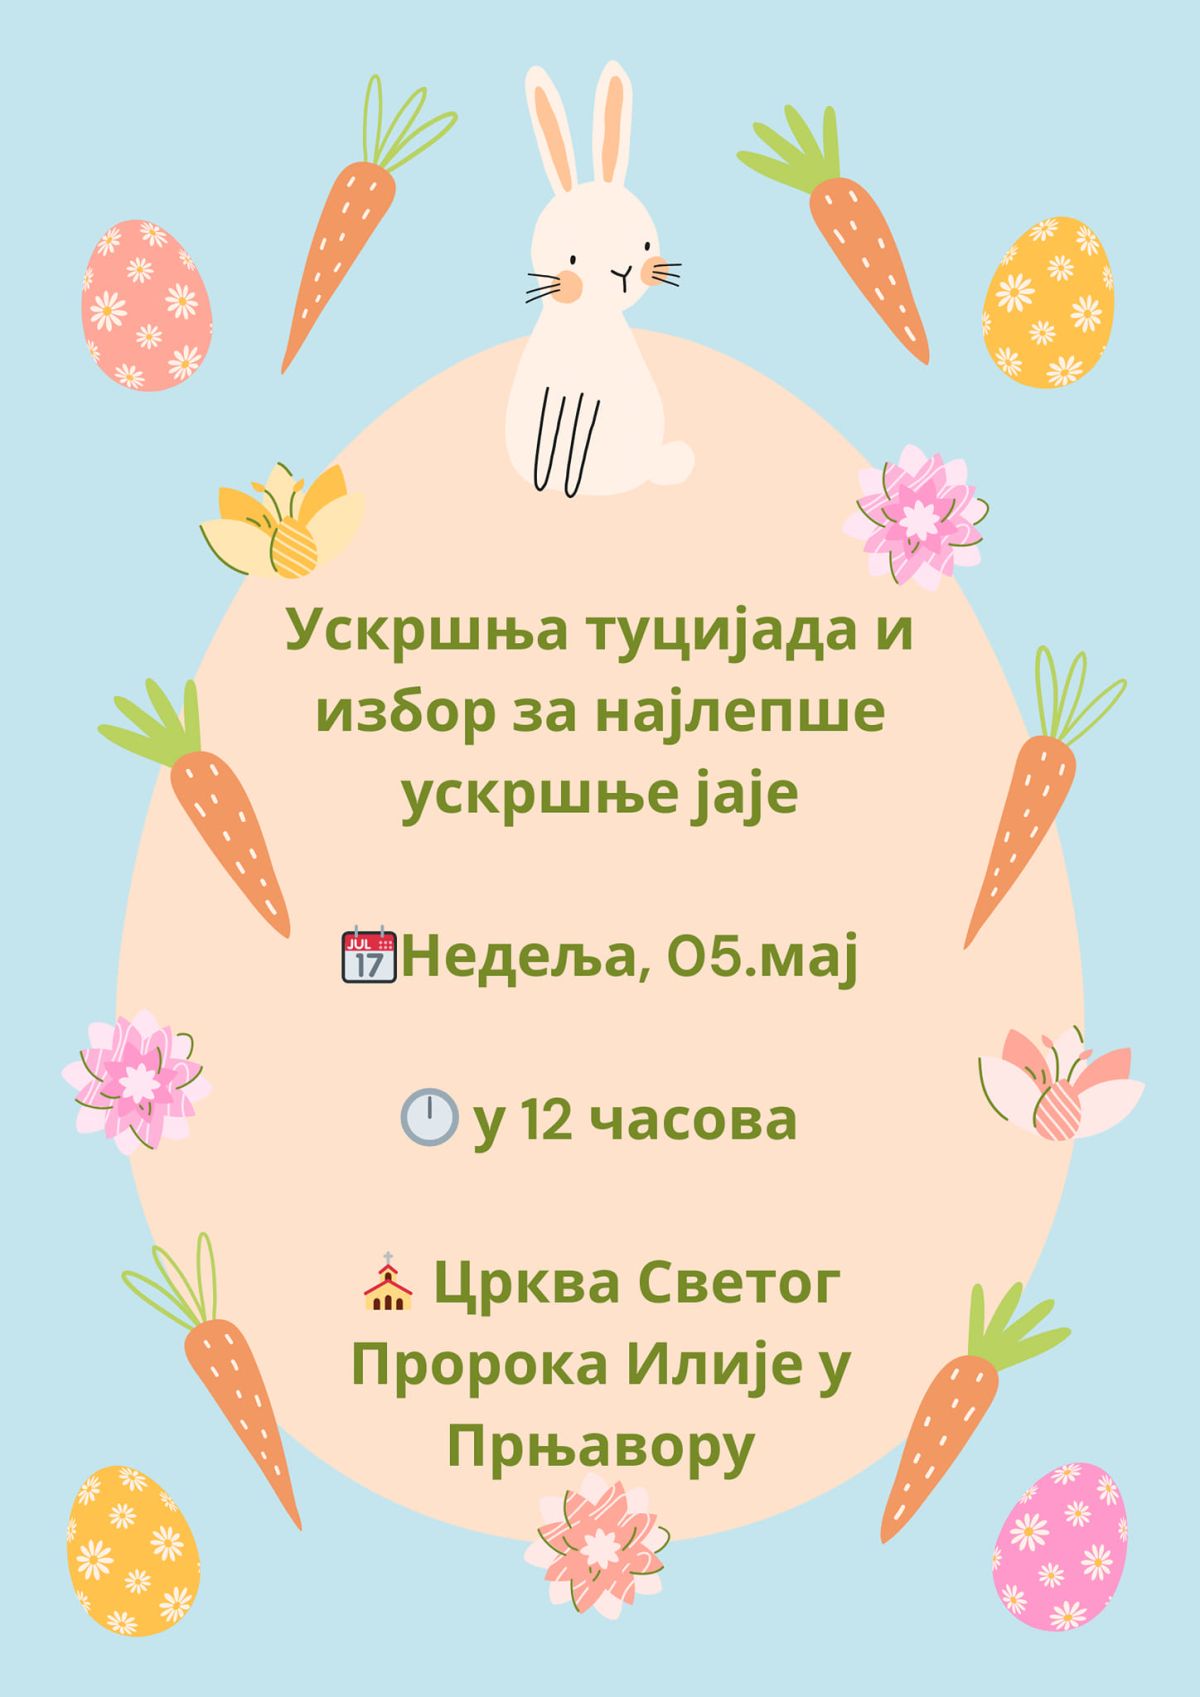 "Најјаче јаје" у недељу од 12.00 у Прњавору